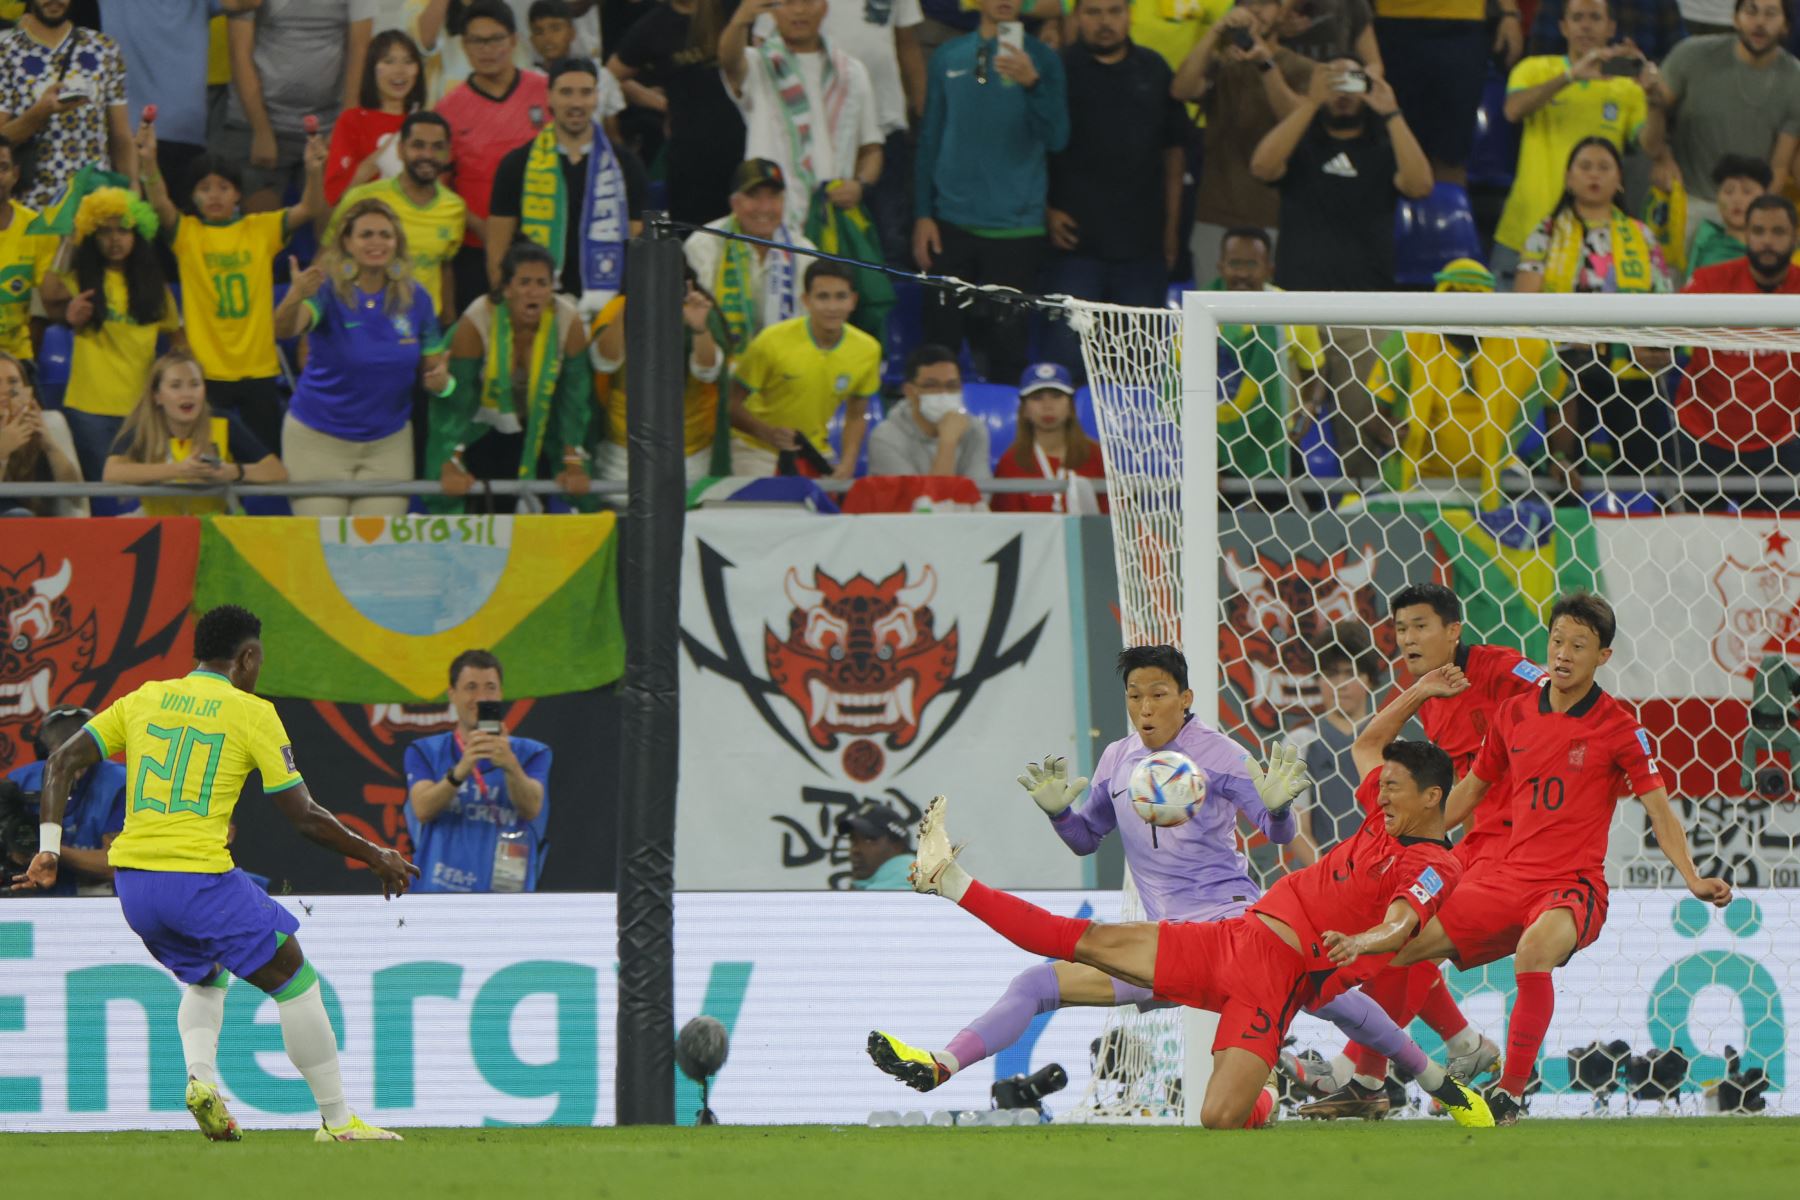 El delantero brasileño Vinicius Junior anota el primer gol de su equipo durante el partido de fútbol de octavos de final de la Copa Mundial Qatar 2022 entre Brasil y Corea del Sur en el Estadio 974 en Doha el 5 de diciembre de 2022.
Foto: AFP